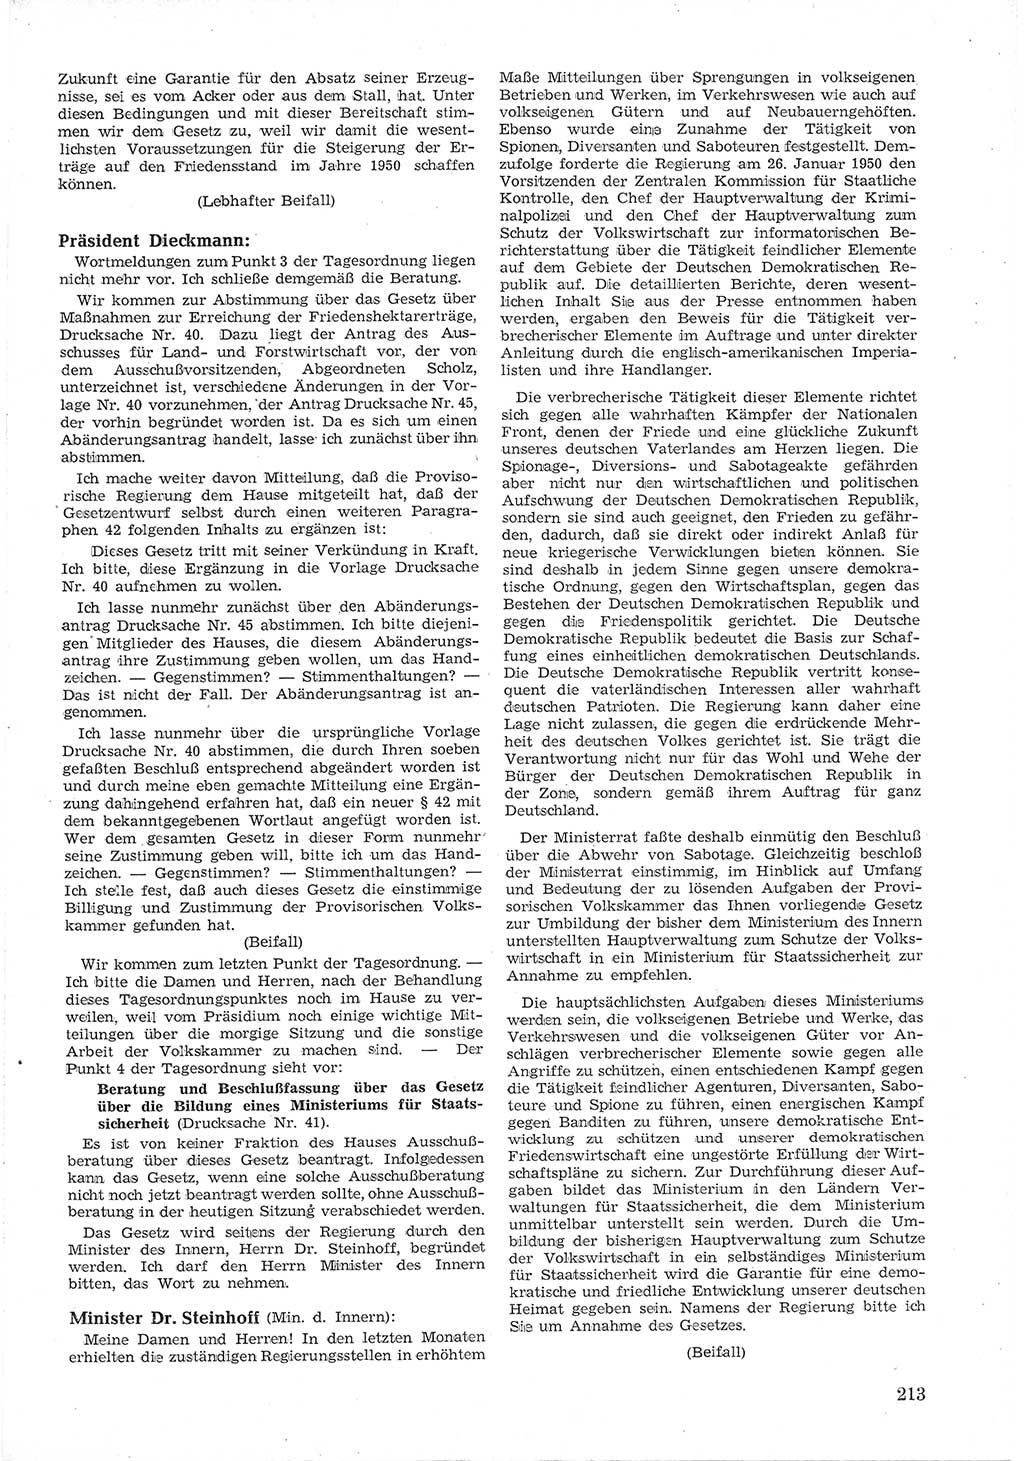 Provisorische Volkskammer (VK) der Deutschen Demokratischen Republik (DDR) 1949-1950, Dokument 225 (Prov. VK DDR 1949-1950, Dok. 225)